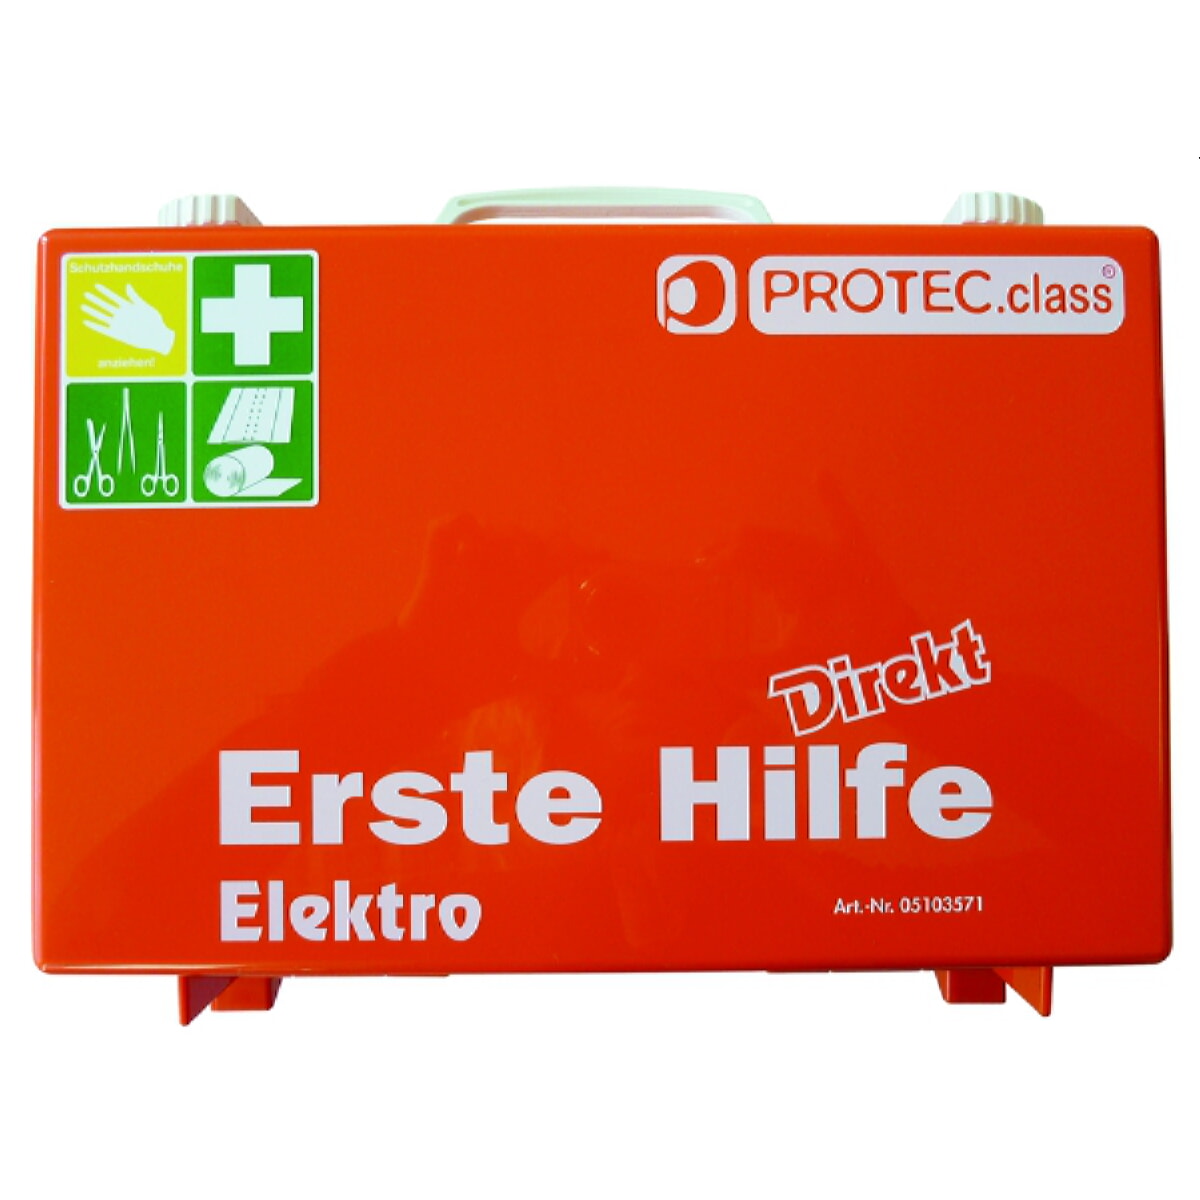 PROTEC.class EH Koffer Elektro PEHKE DIN 13157 (MHD) 05103571